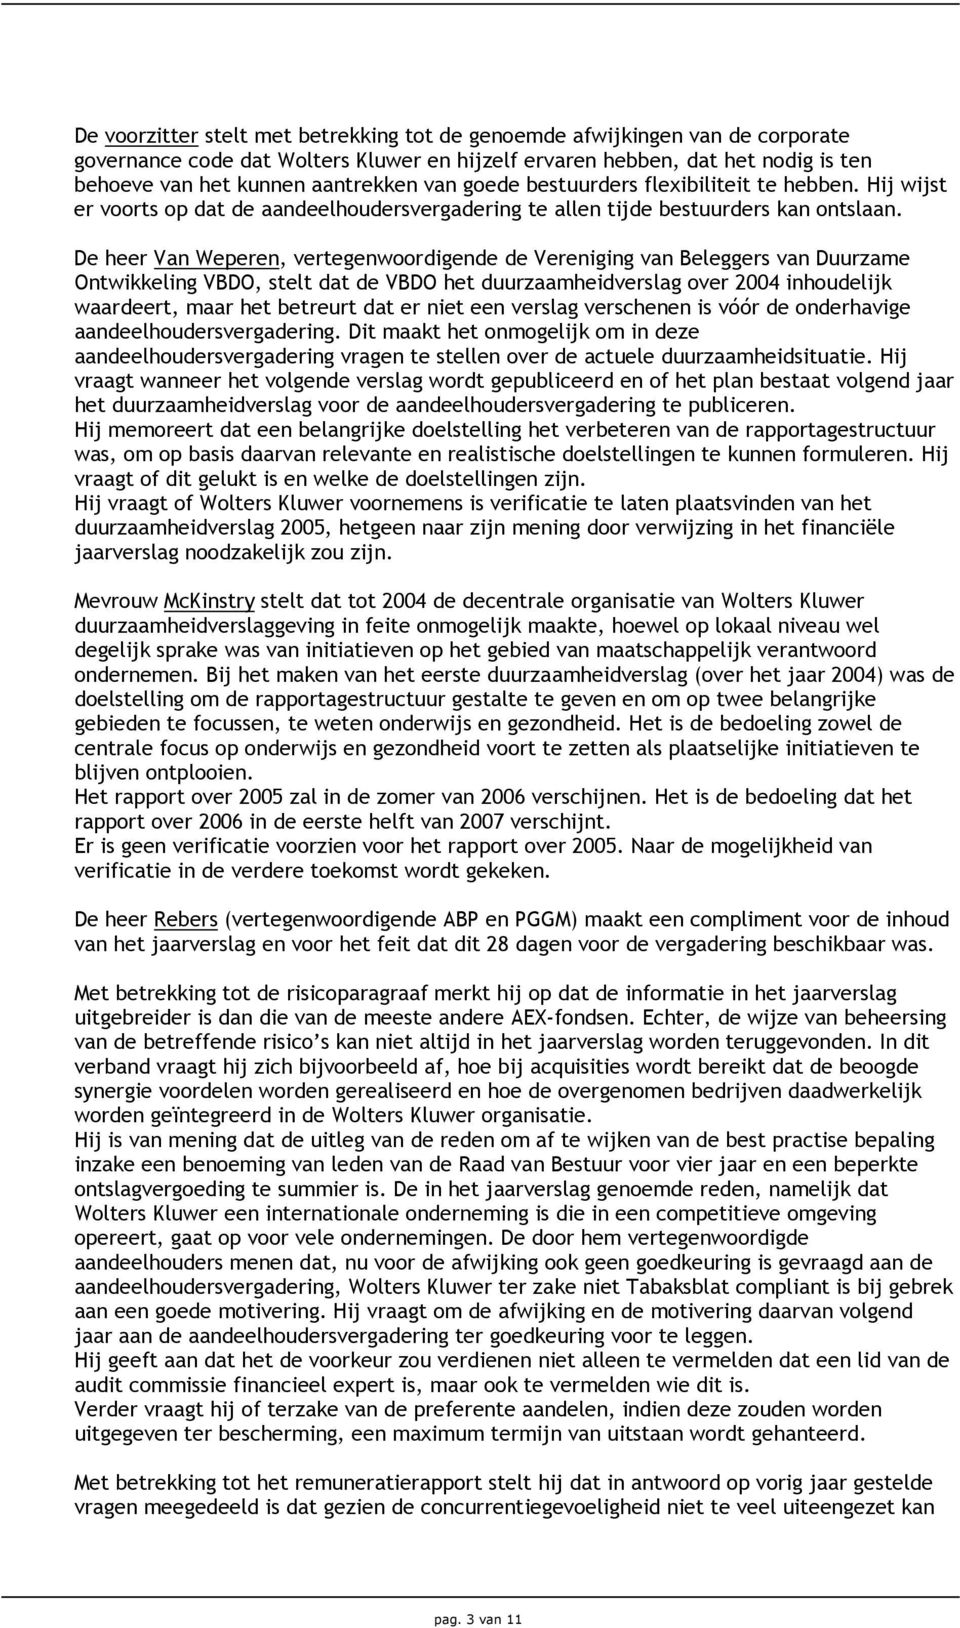 De heer Van Weperen, vertegenwoordigende de Vereniging van Beleggers van Duurzame Ontwikkeling VBDO, stelt dat de VBDO het duurzaamheidverslag over 2004 inhoudelijk waardeert, maar het betreurt dat